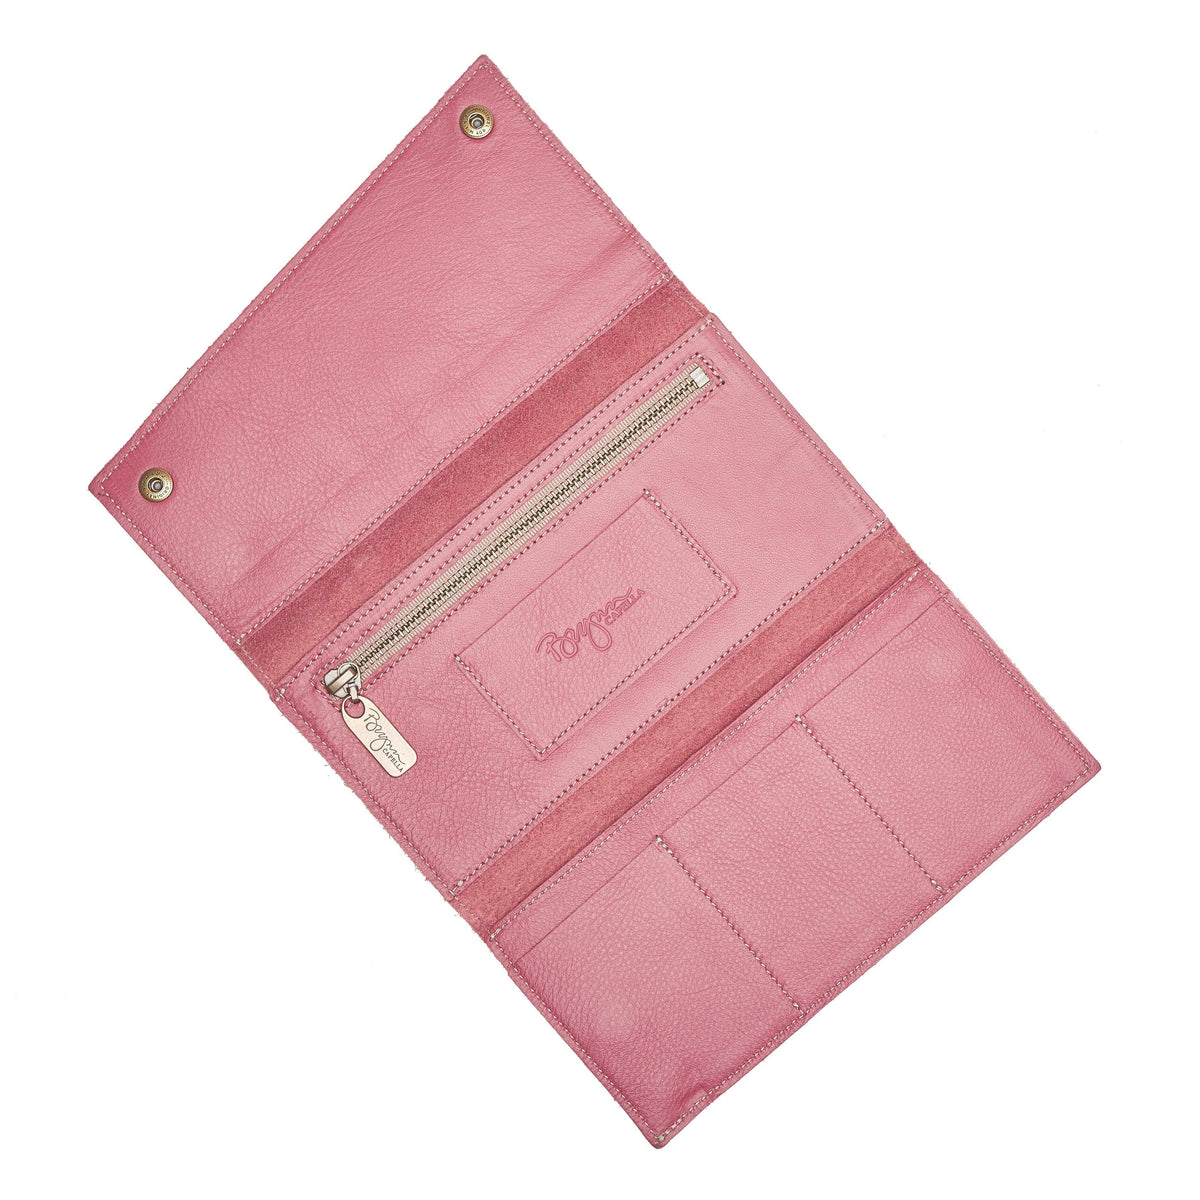 Kimerly Tri-fold Wallet - Rosewood - Brynn Capella, Tri-fold Wallet